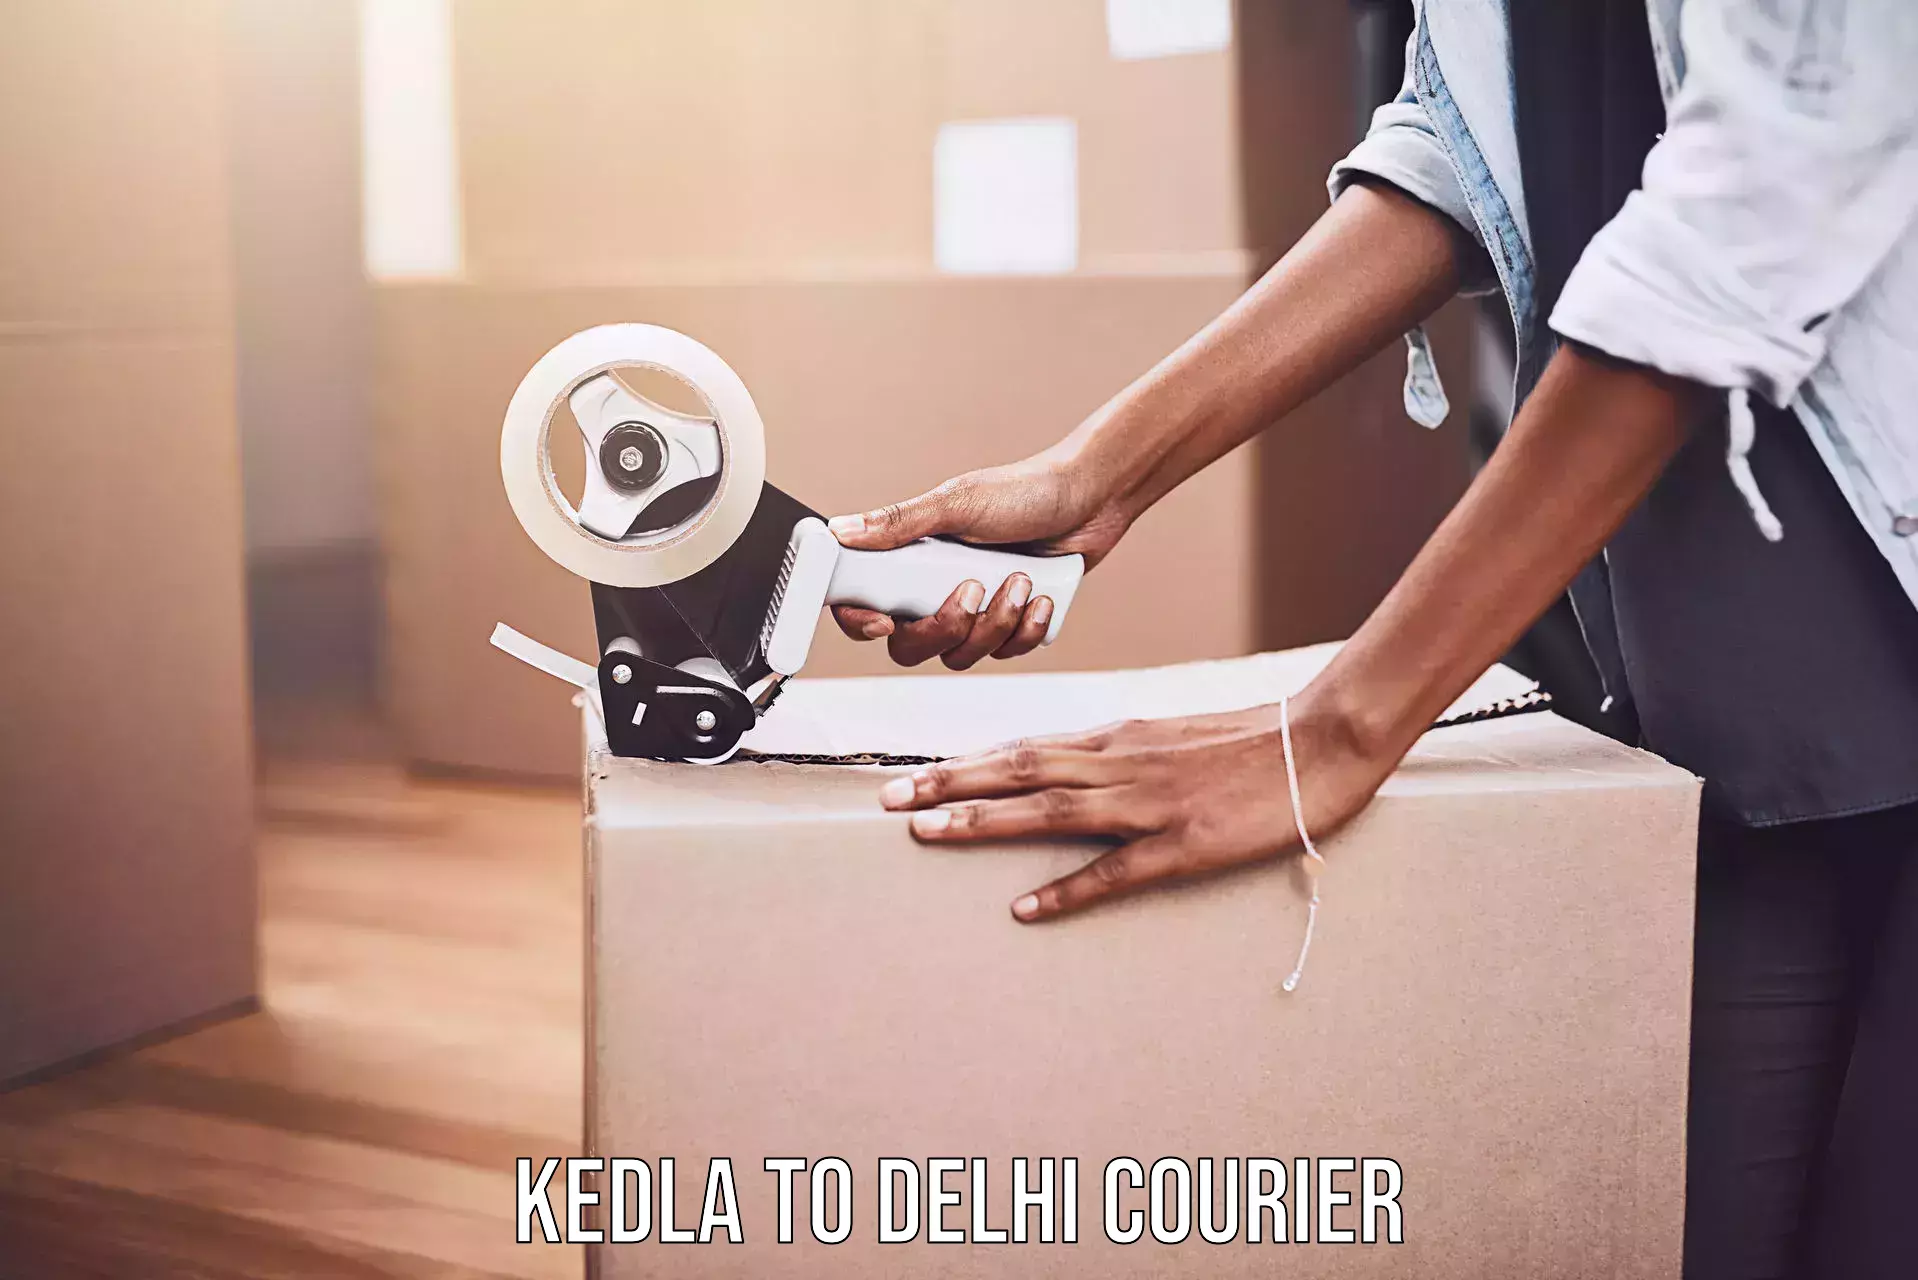 Efficient parcel service Kedla to Lodhi Road